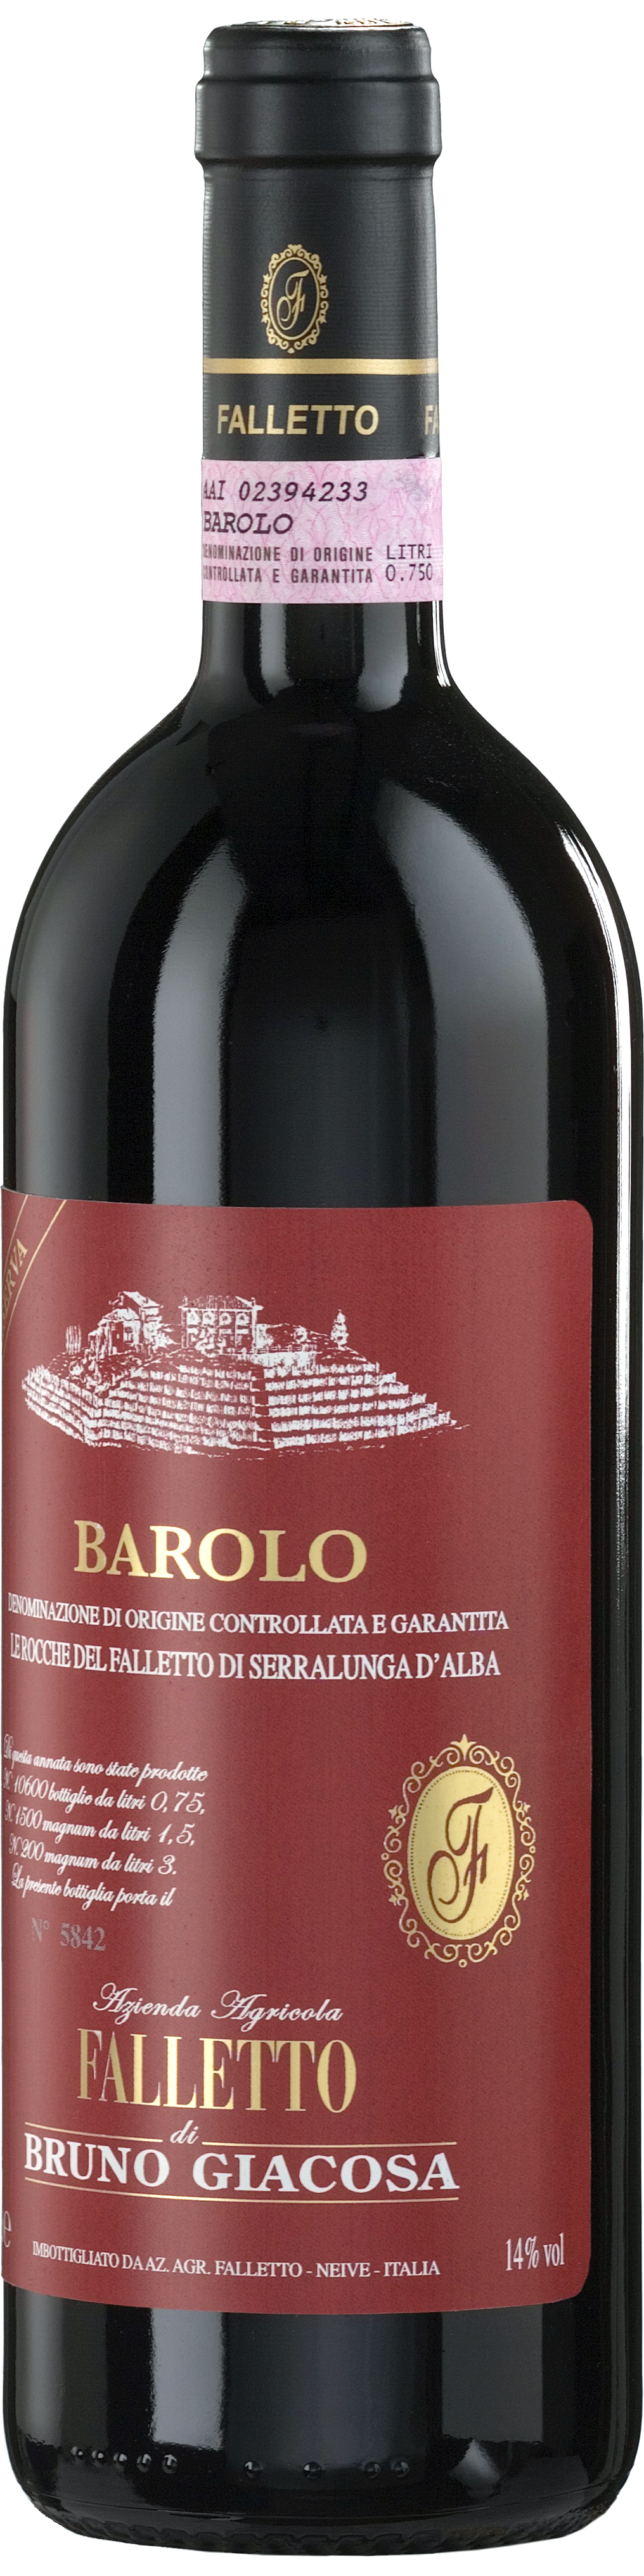 Bottle shot of 2005 Barolo Le Rocche del Falletto